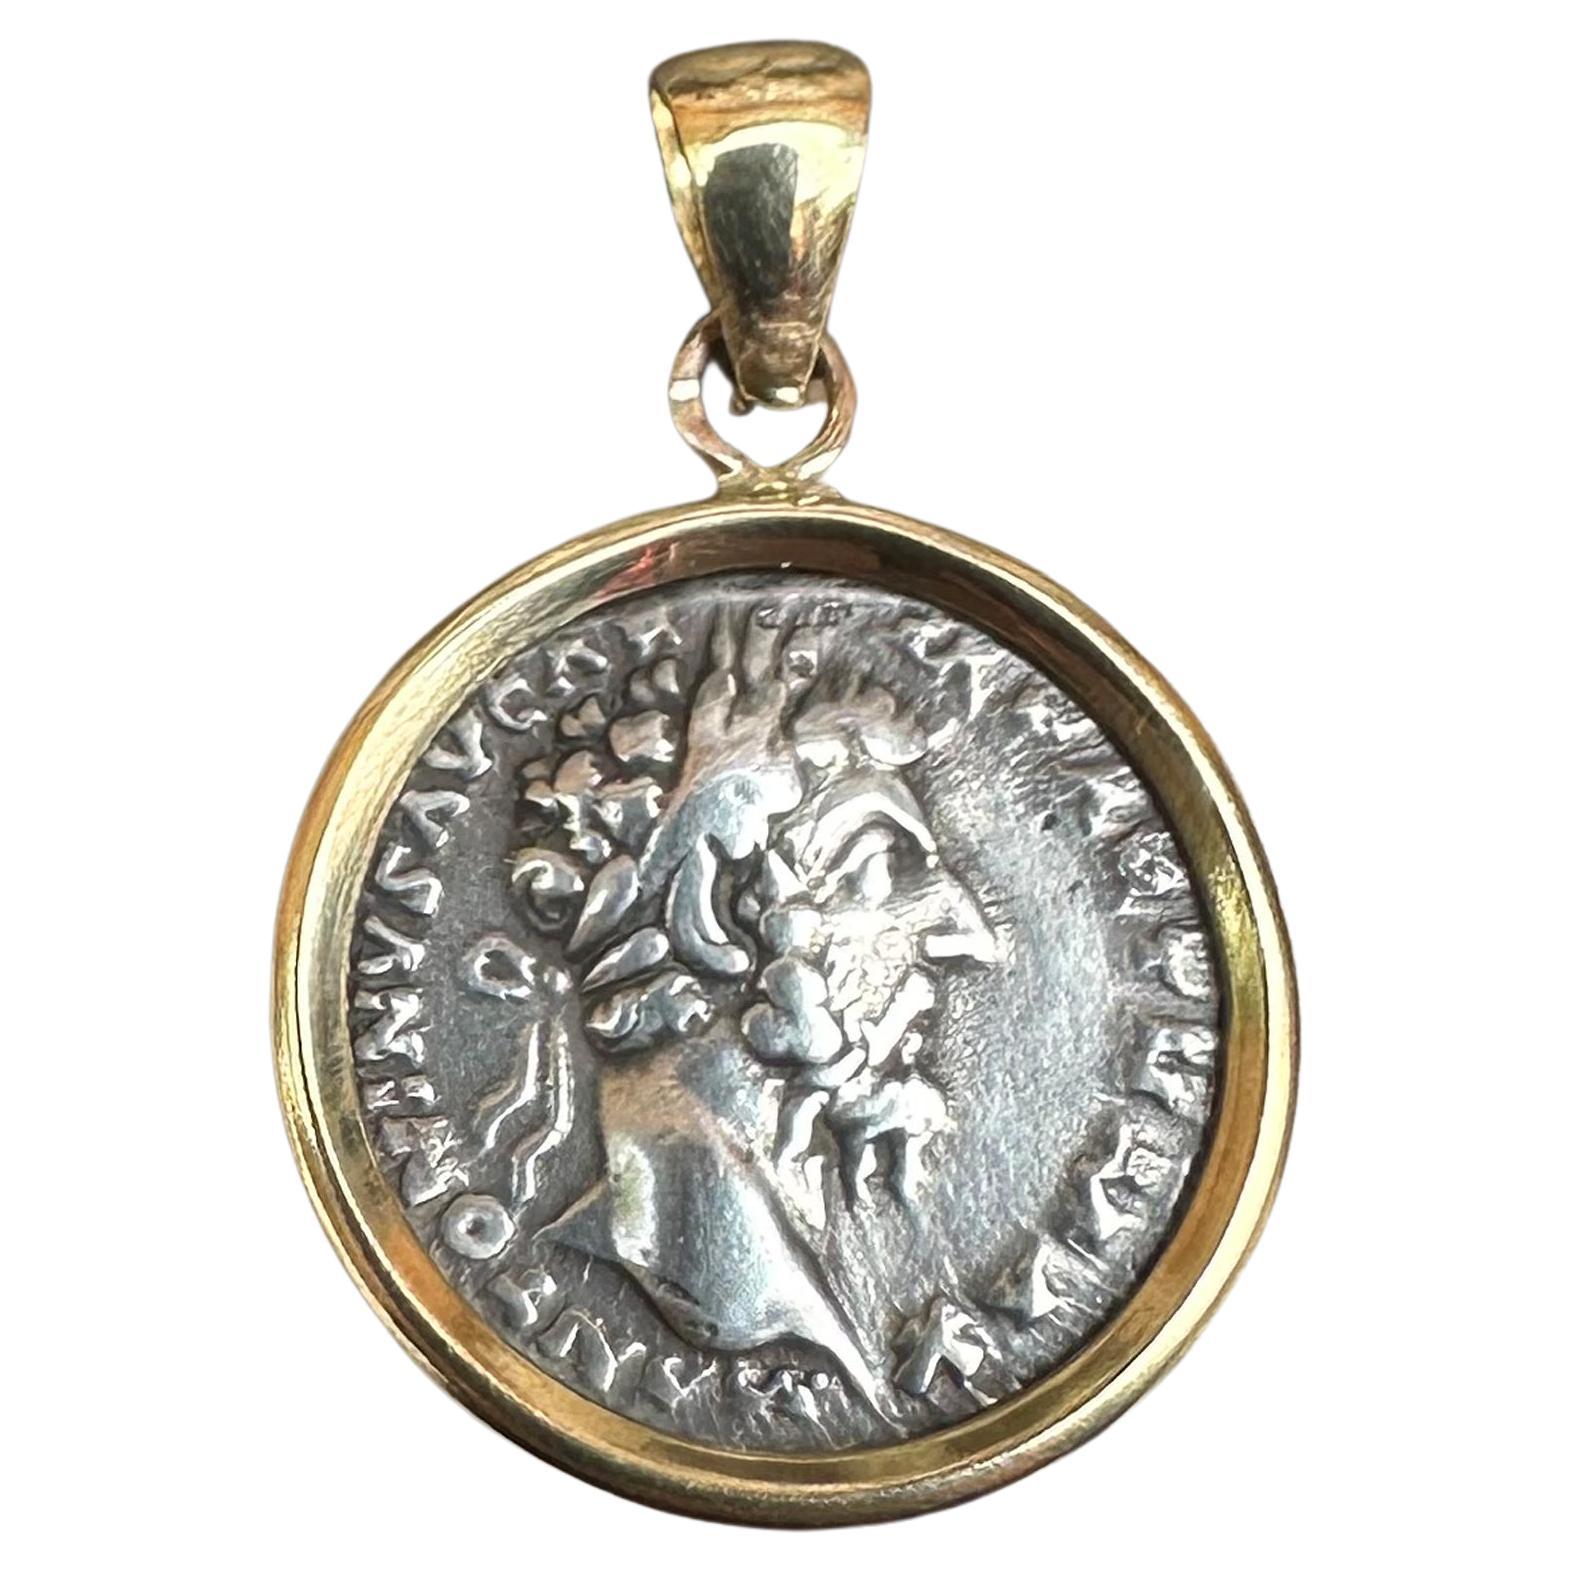 Authentique pièce de monnaie romaine antique pendentif en or 18 carats avec emp. Marcus Aurelius